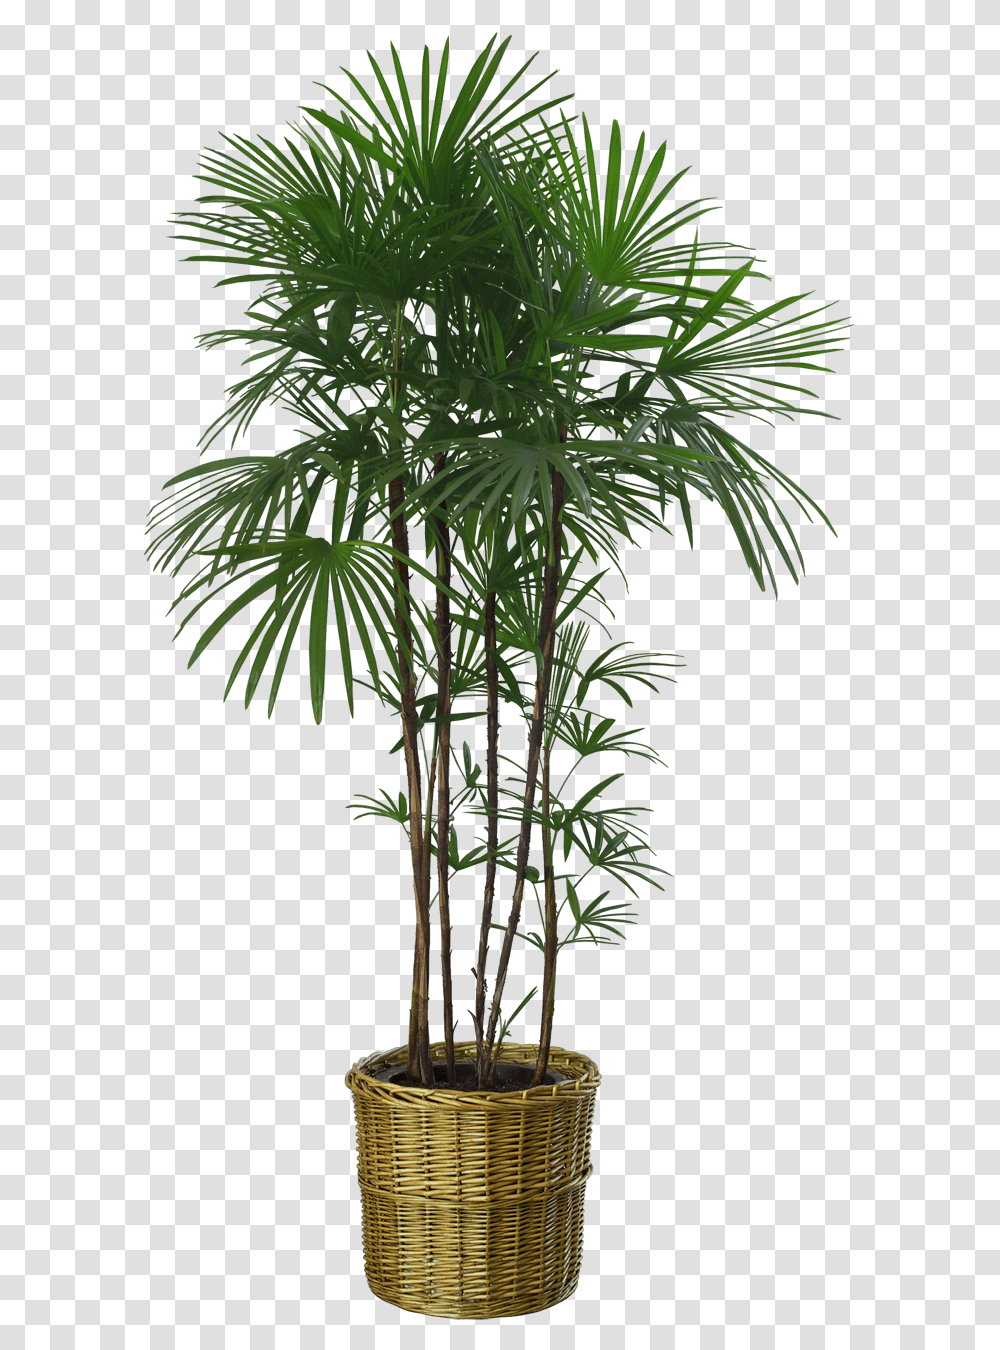 Plants Images Background Plant, Tree, Palm Tree, Arecaceae, Hemp Transparent Png